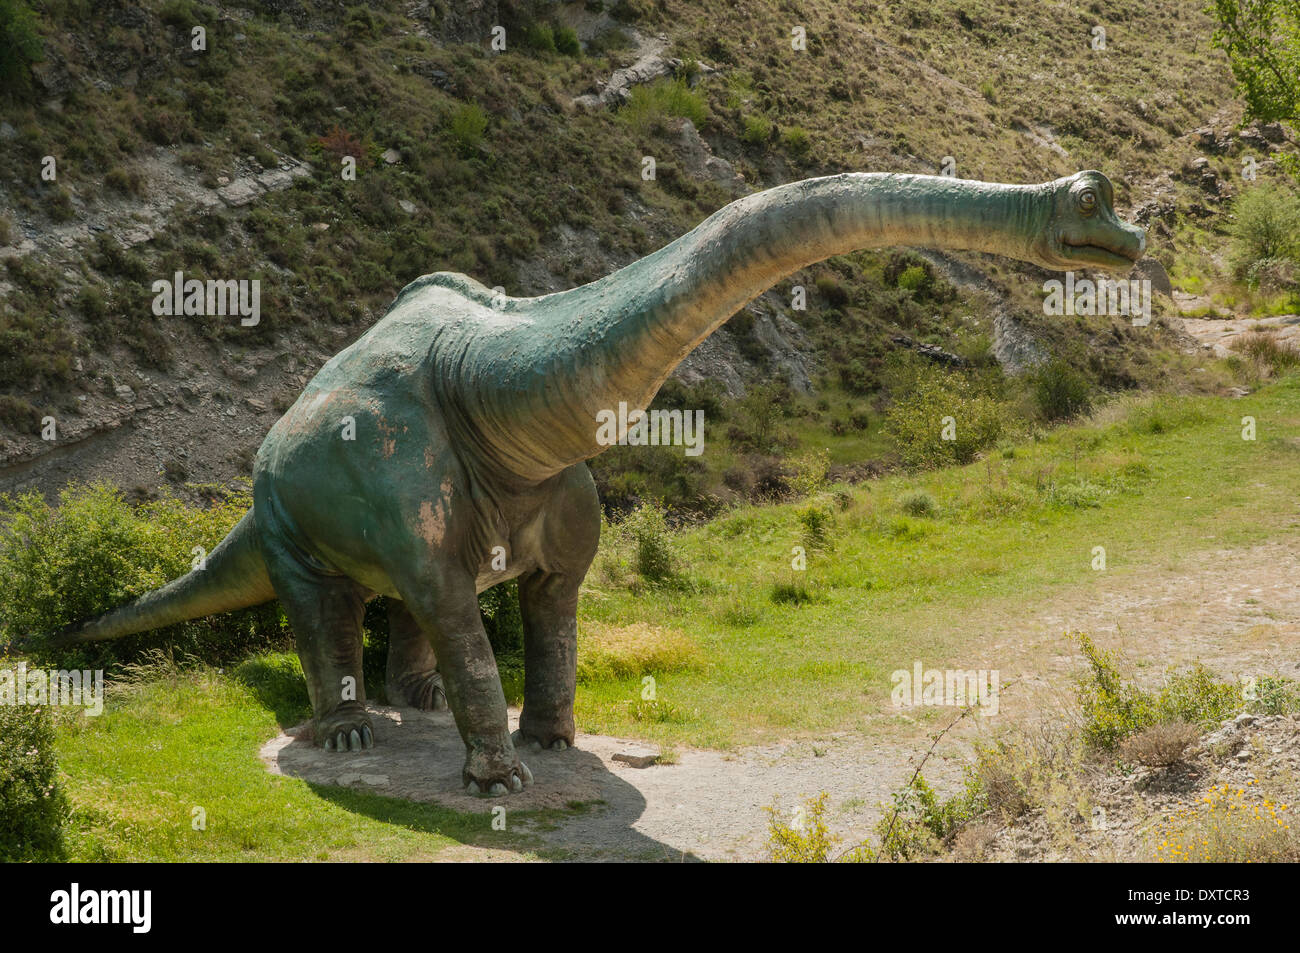 Modello ricreazione reale.size di dinosauro sauropodi in fibra di vetro e cemento al sito paleontologico Valdecevillo, la Rioja, Spagna. Foto Stock